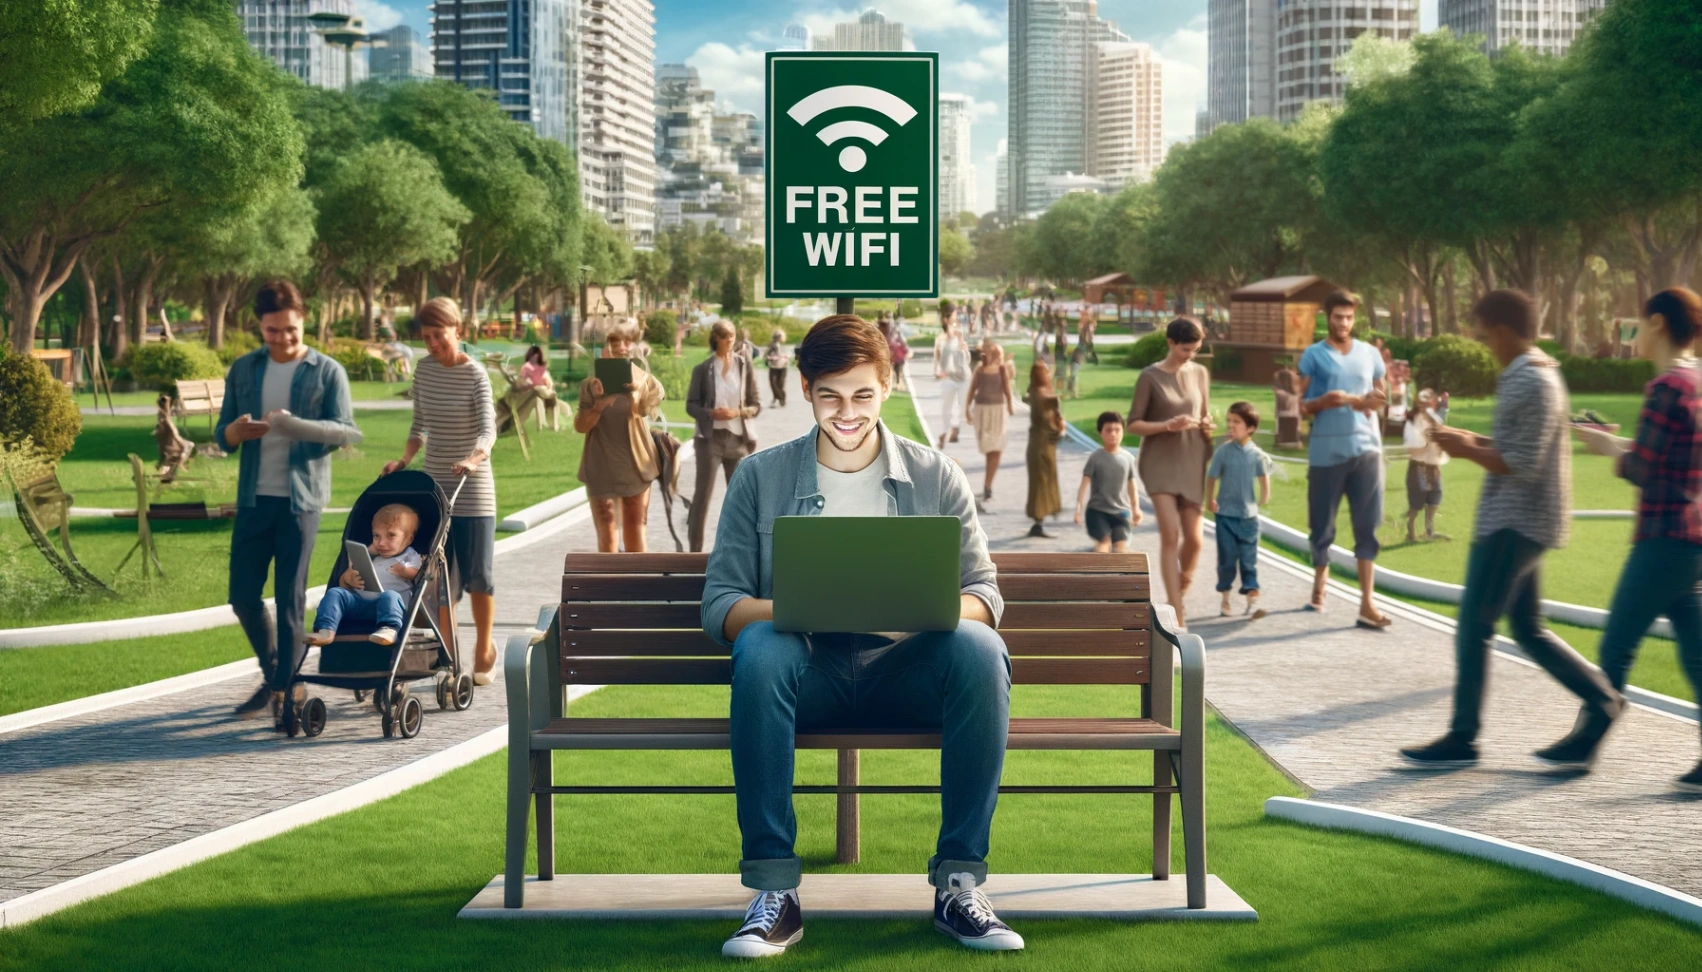 Lær hvordan du enkelt kan finne gratis WiFi gratis